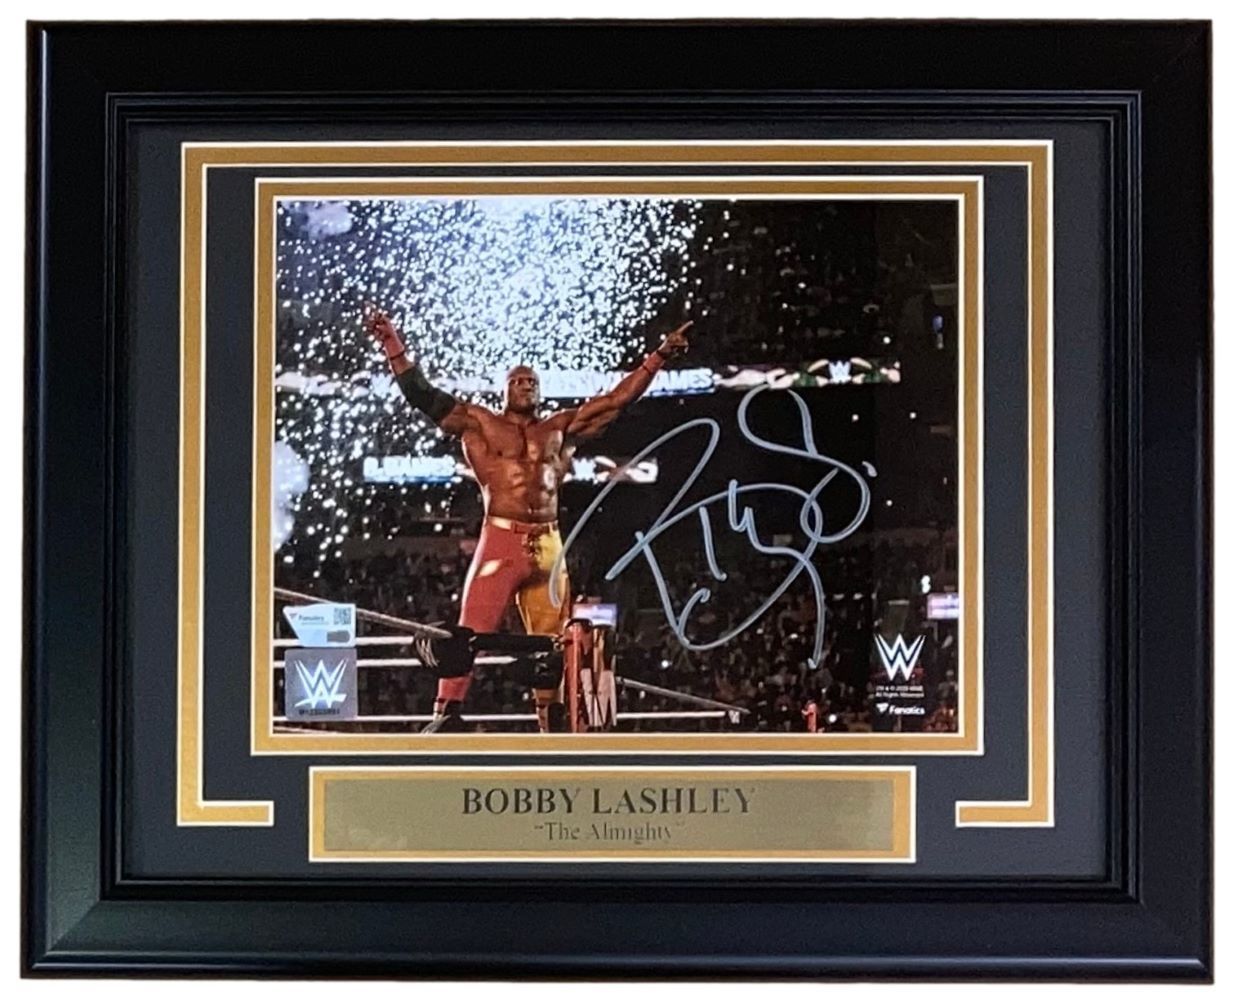 Primary image for Bobby Lashley Signed Framed 8x10 WWE Photo Fanatics